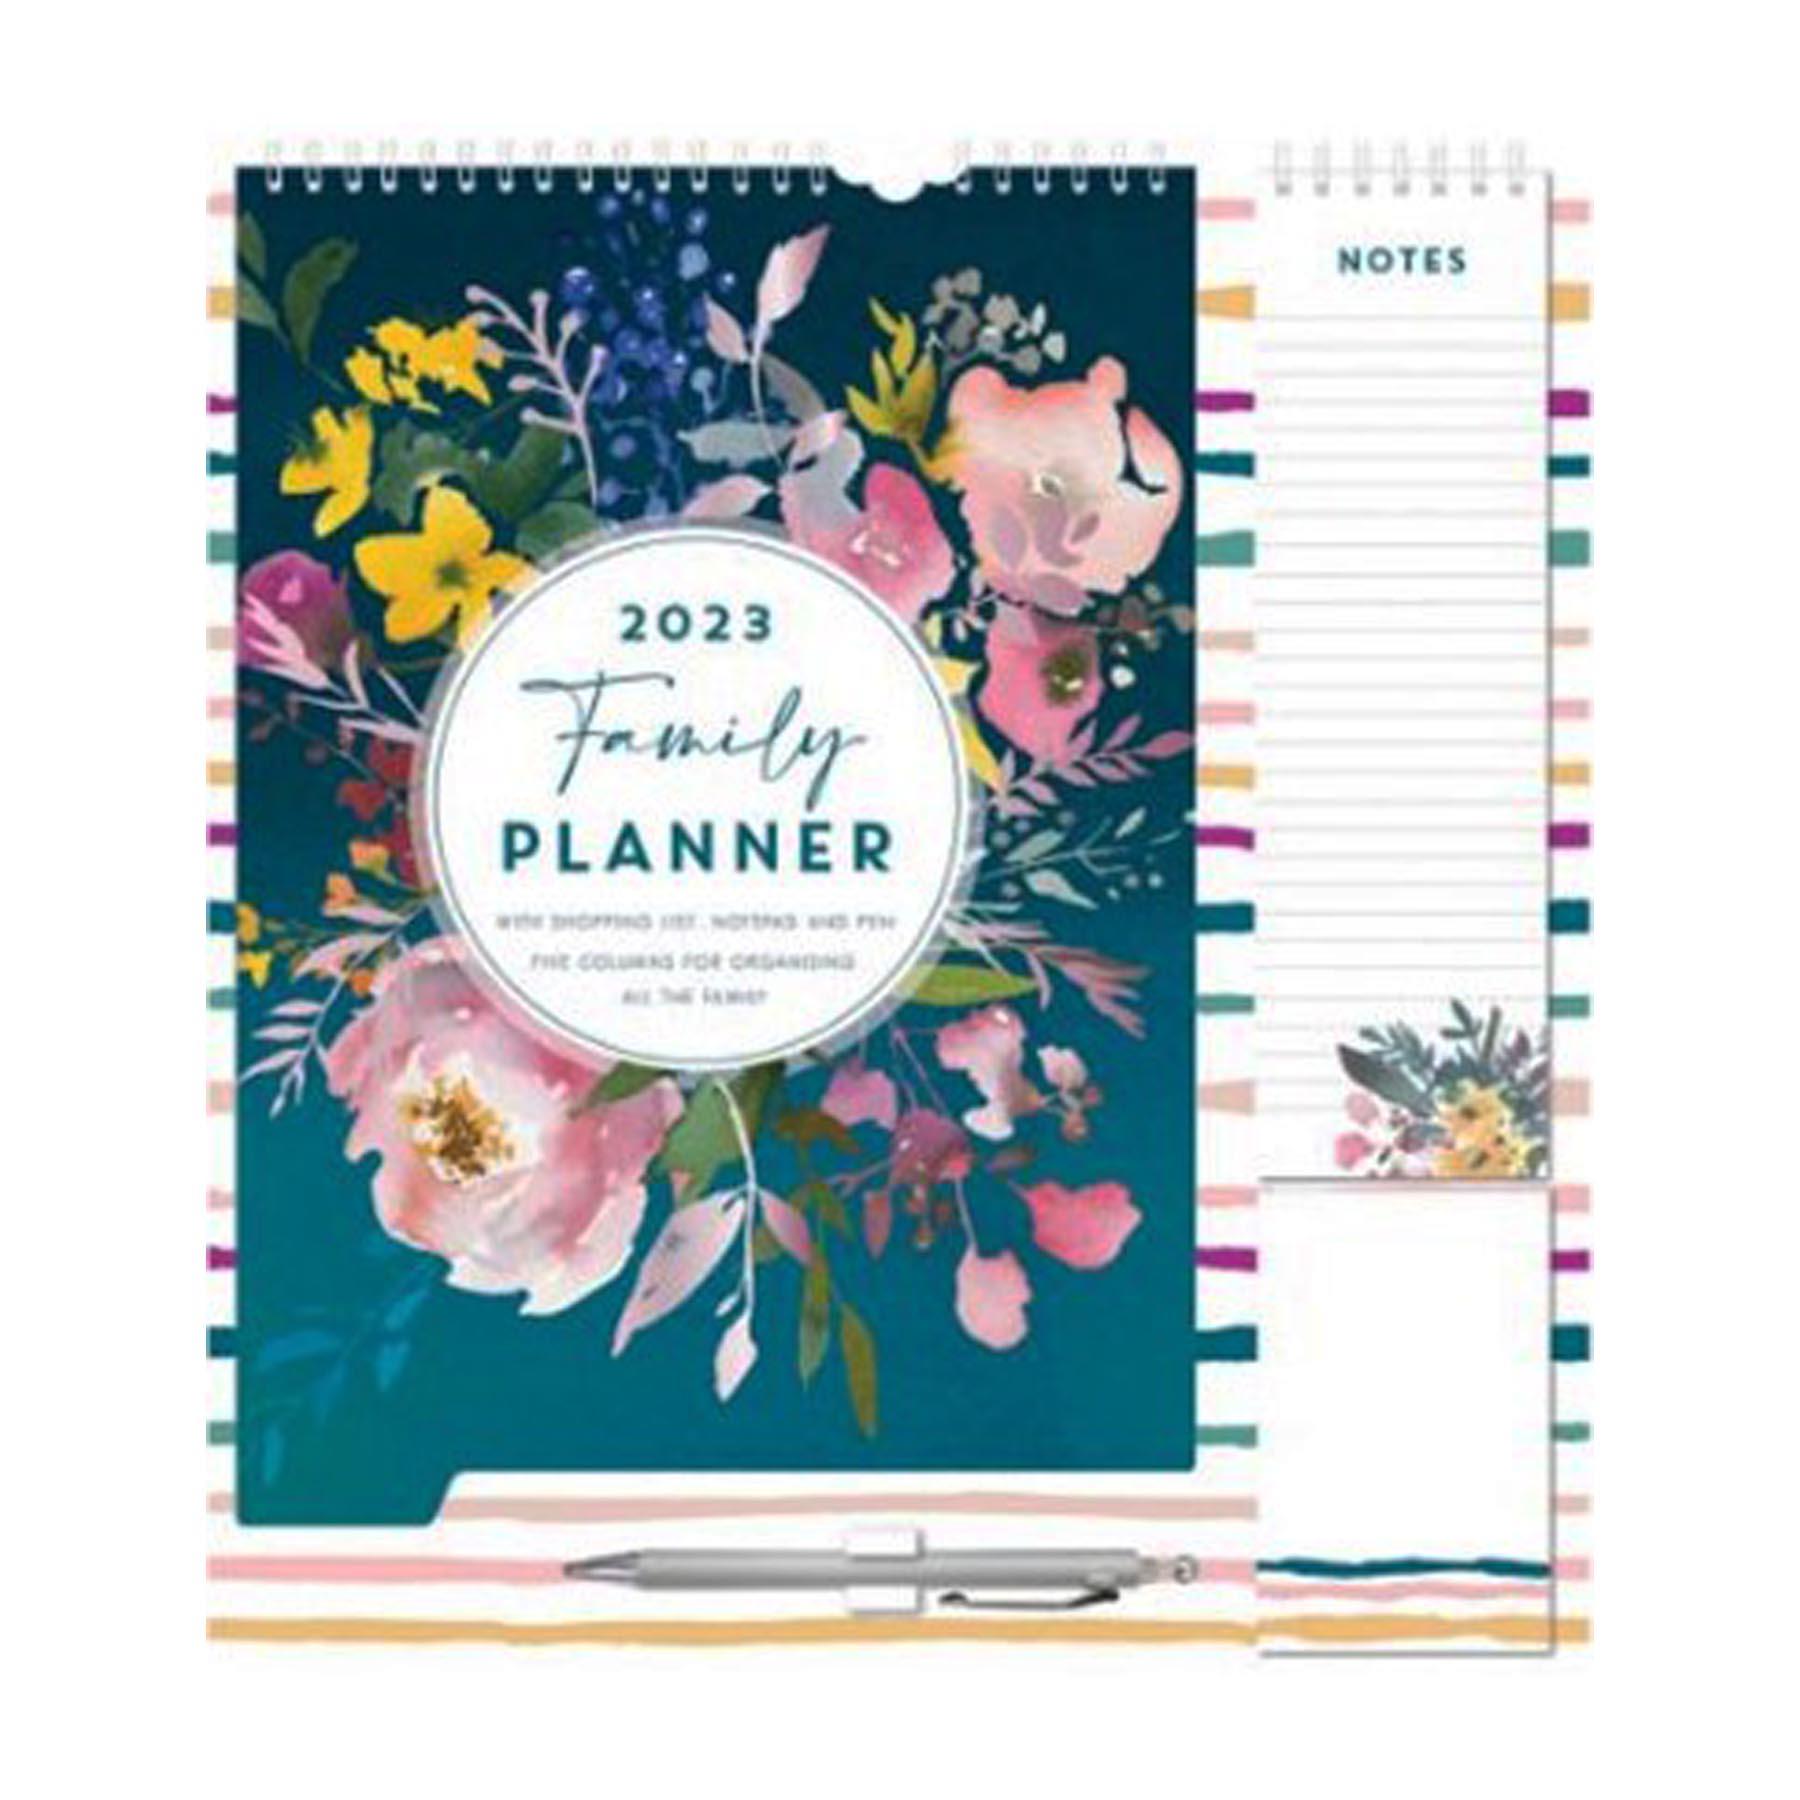 2023 Family Organiser Calendar - Shopping List, Memo Pad and Pen - Flowers